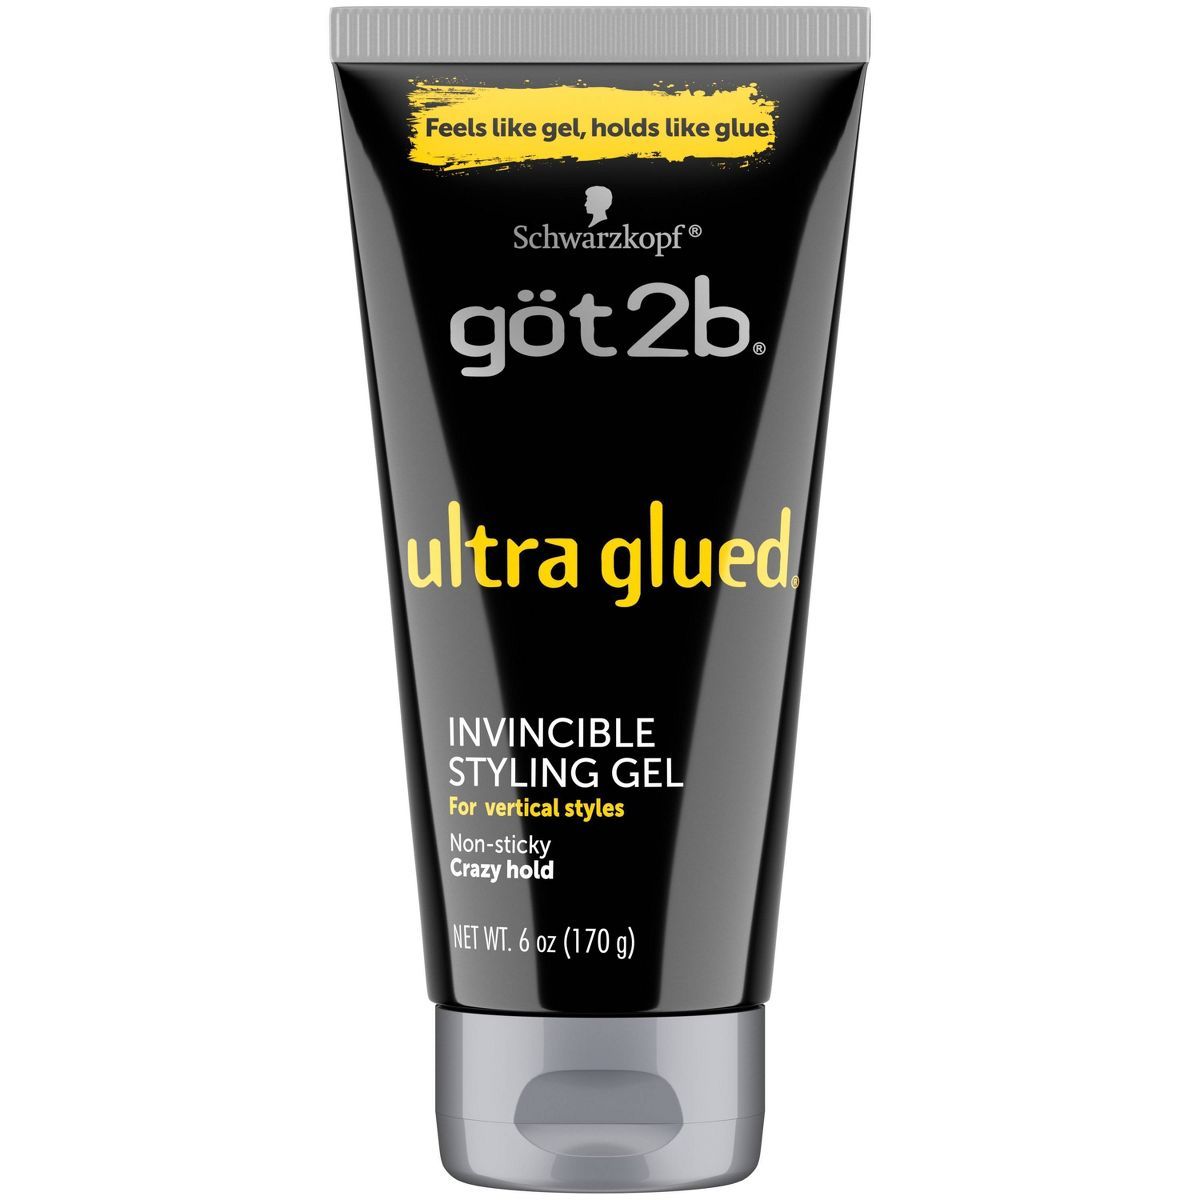 Göt2b Ultra Glued Invincible Styling Gel - 6oz | Target